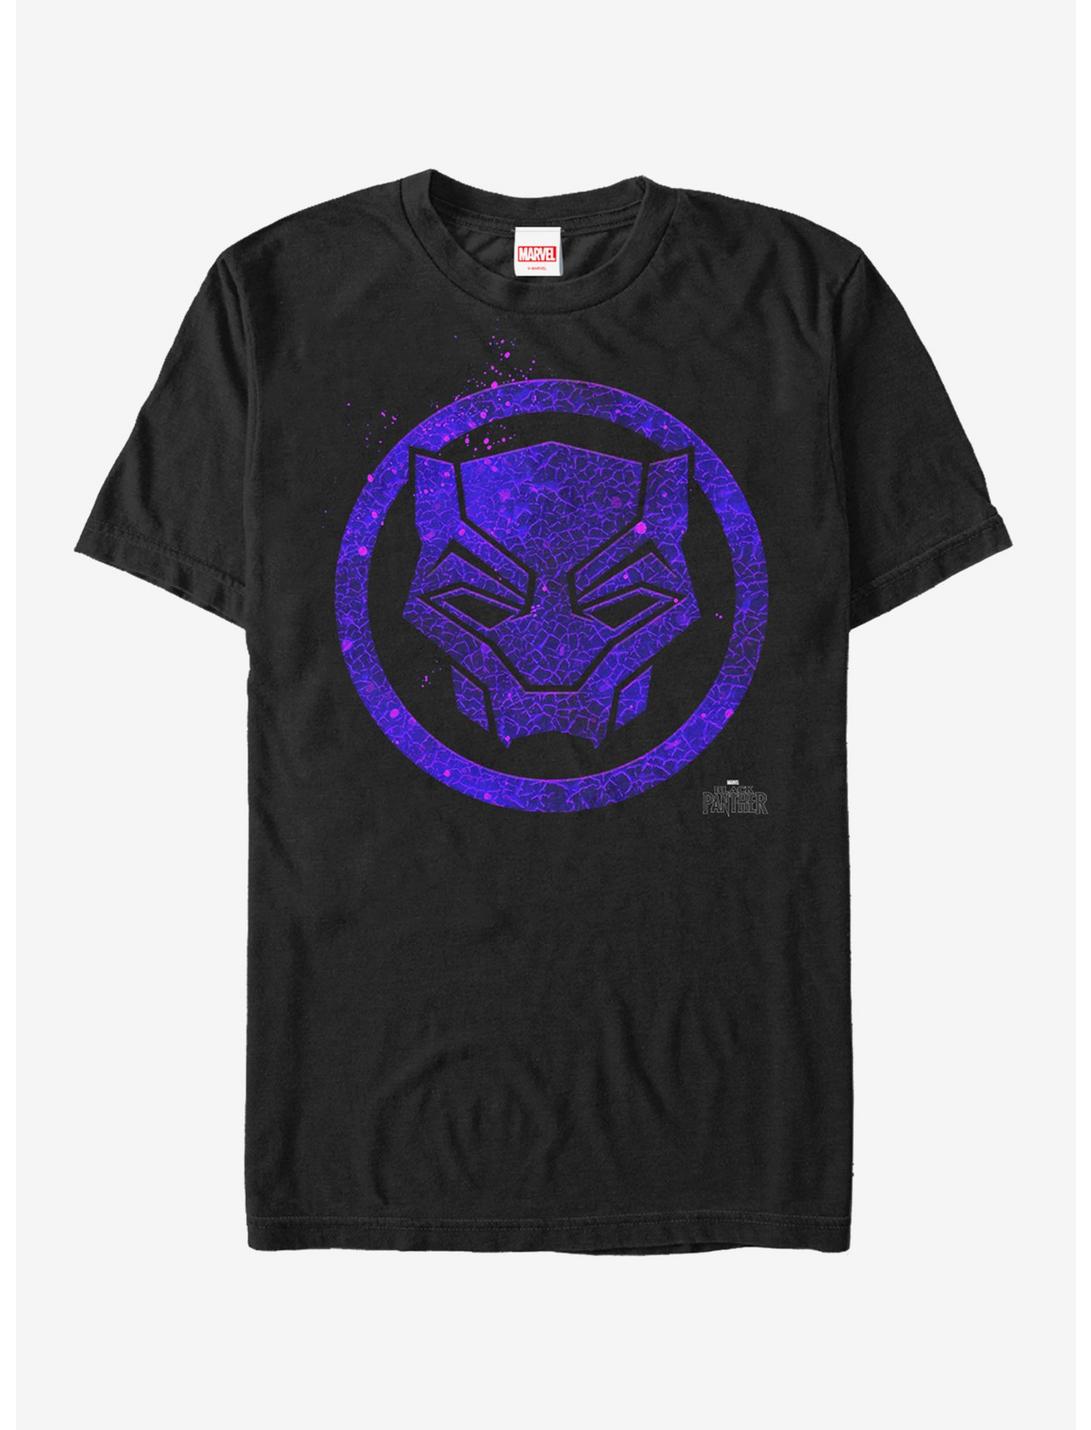 Marvel Black Panther 2018 Ember Mask T-Shirt, BLACK, hi-res